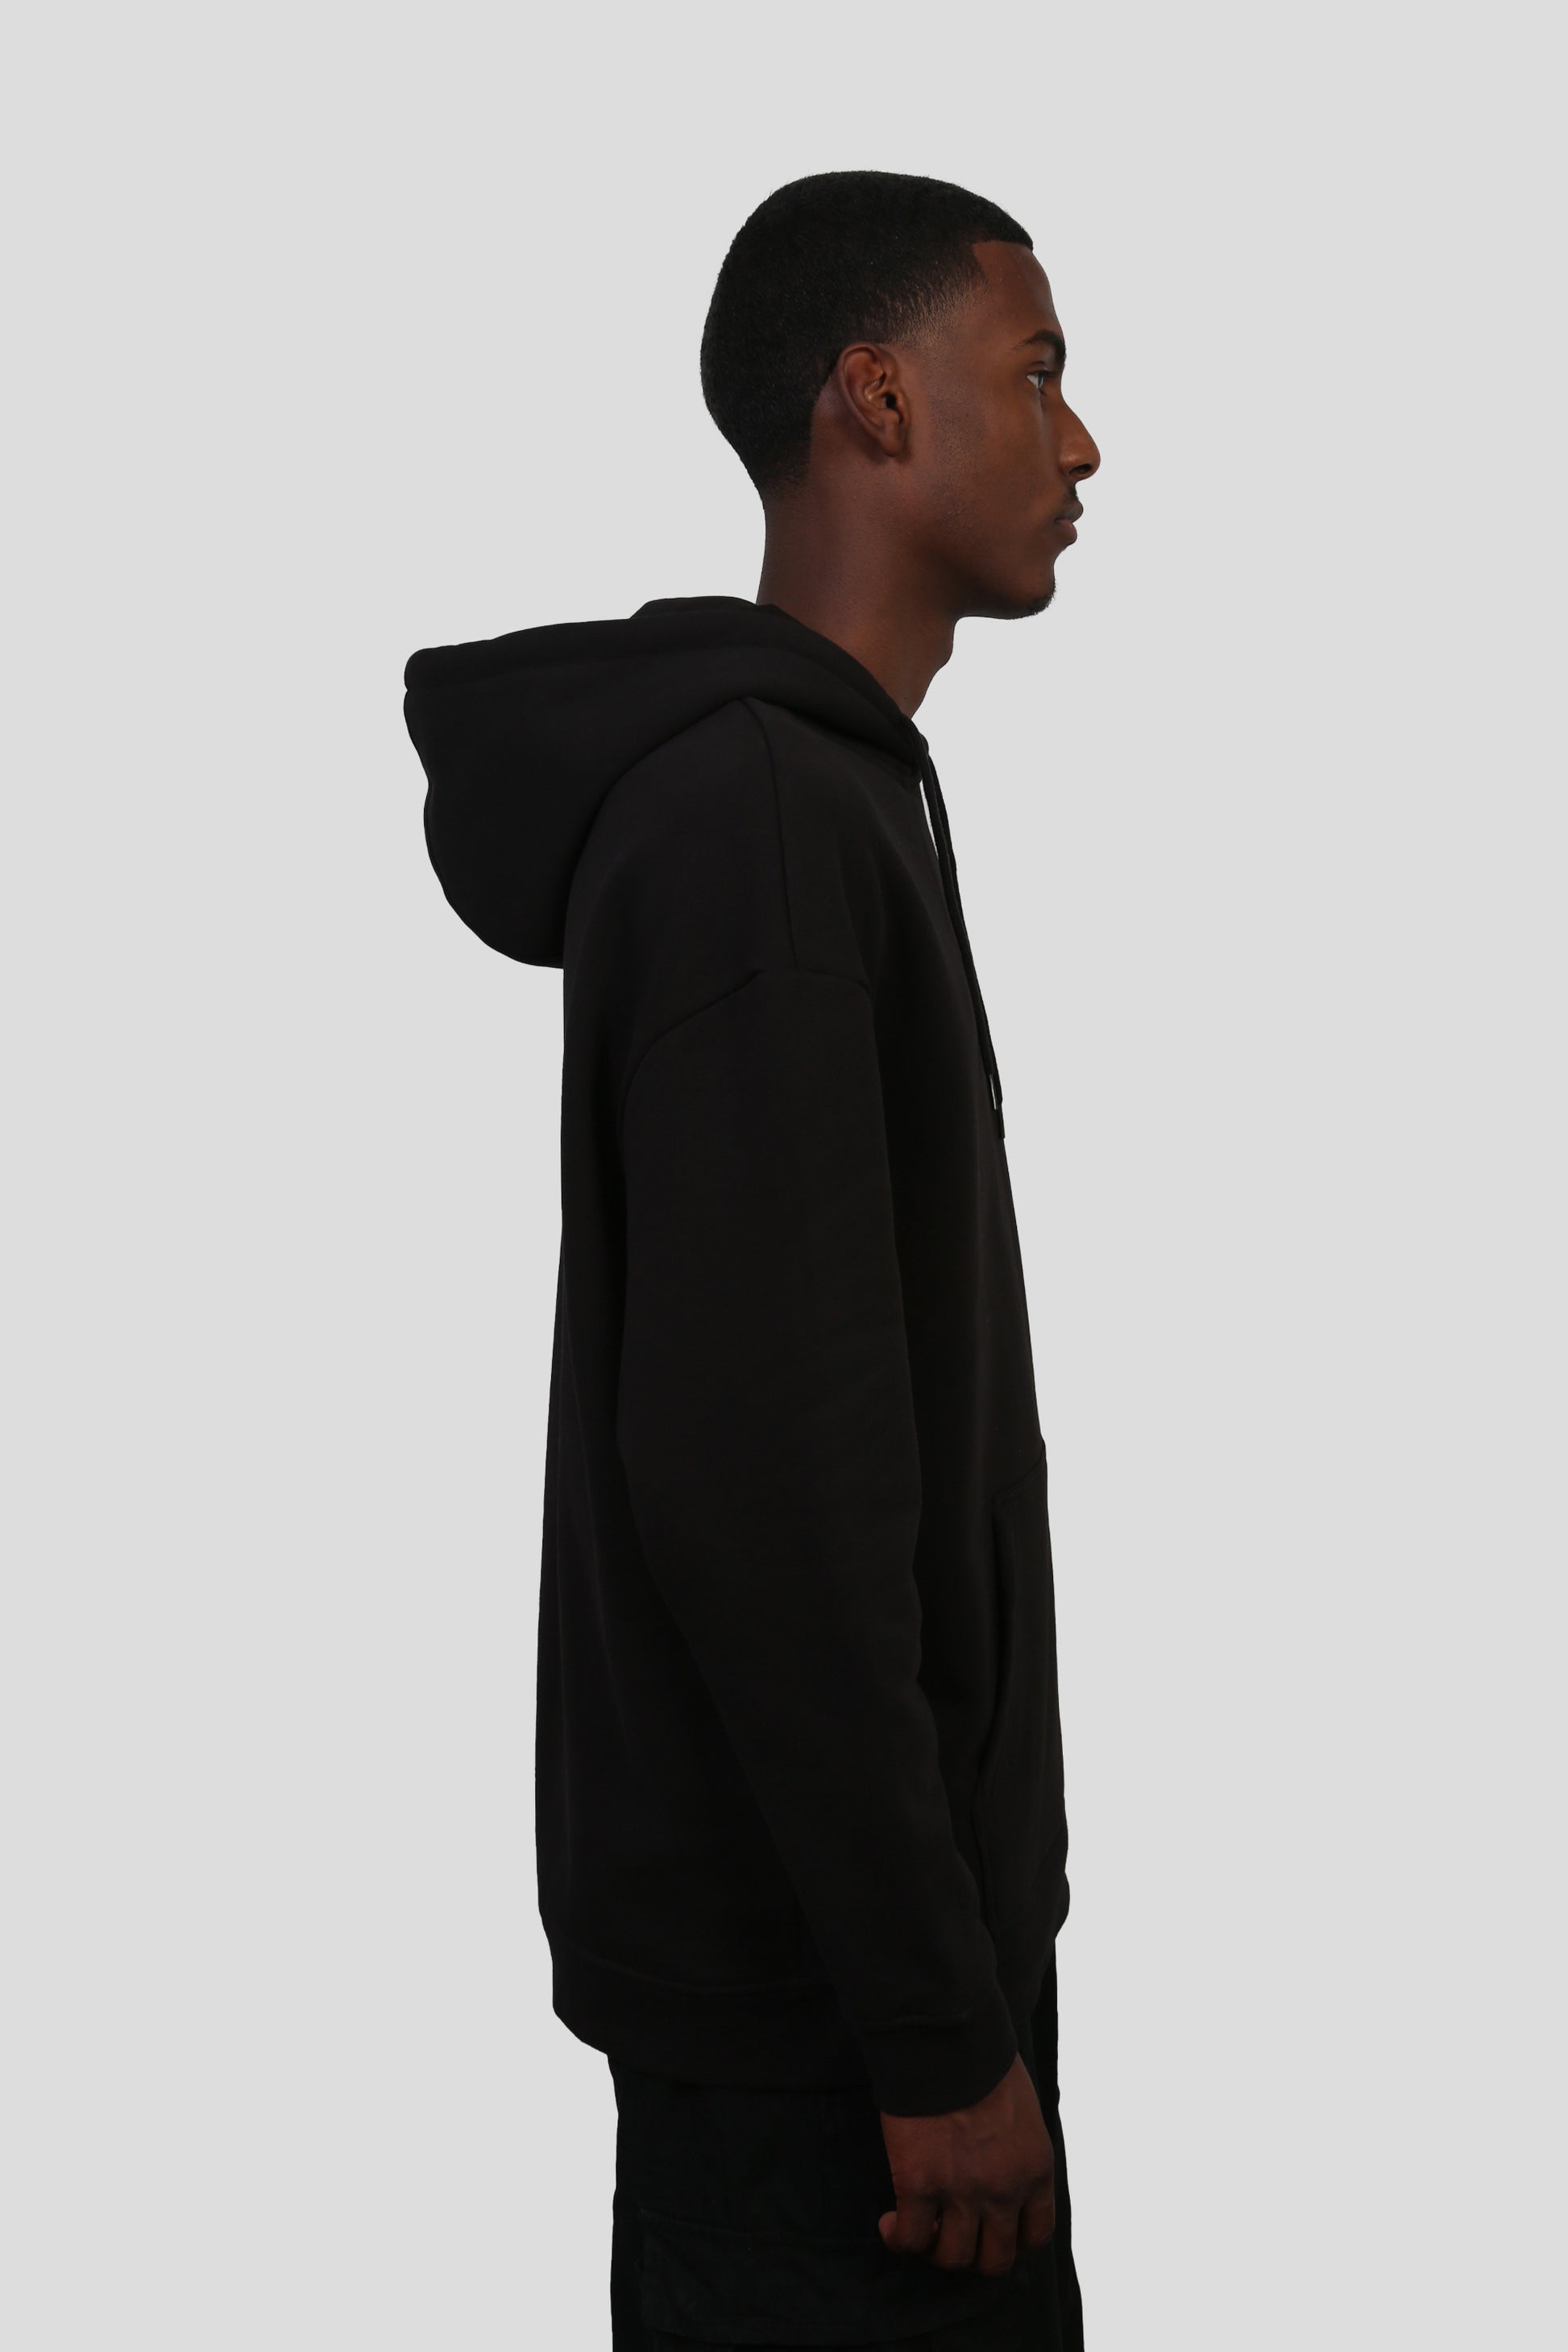 www.ninetyninestudios.de| AKHIRAH LIGHT HOODIE BLACK| Hoodie | €54.99 | Revolutionary Islamic Streetwear | 99Studios